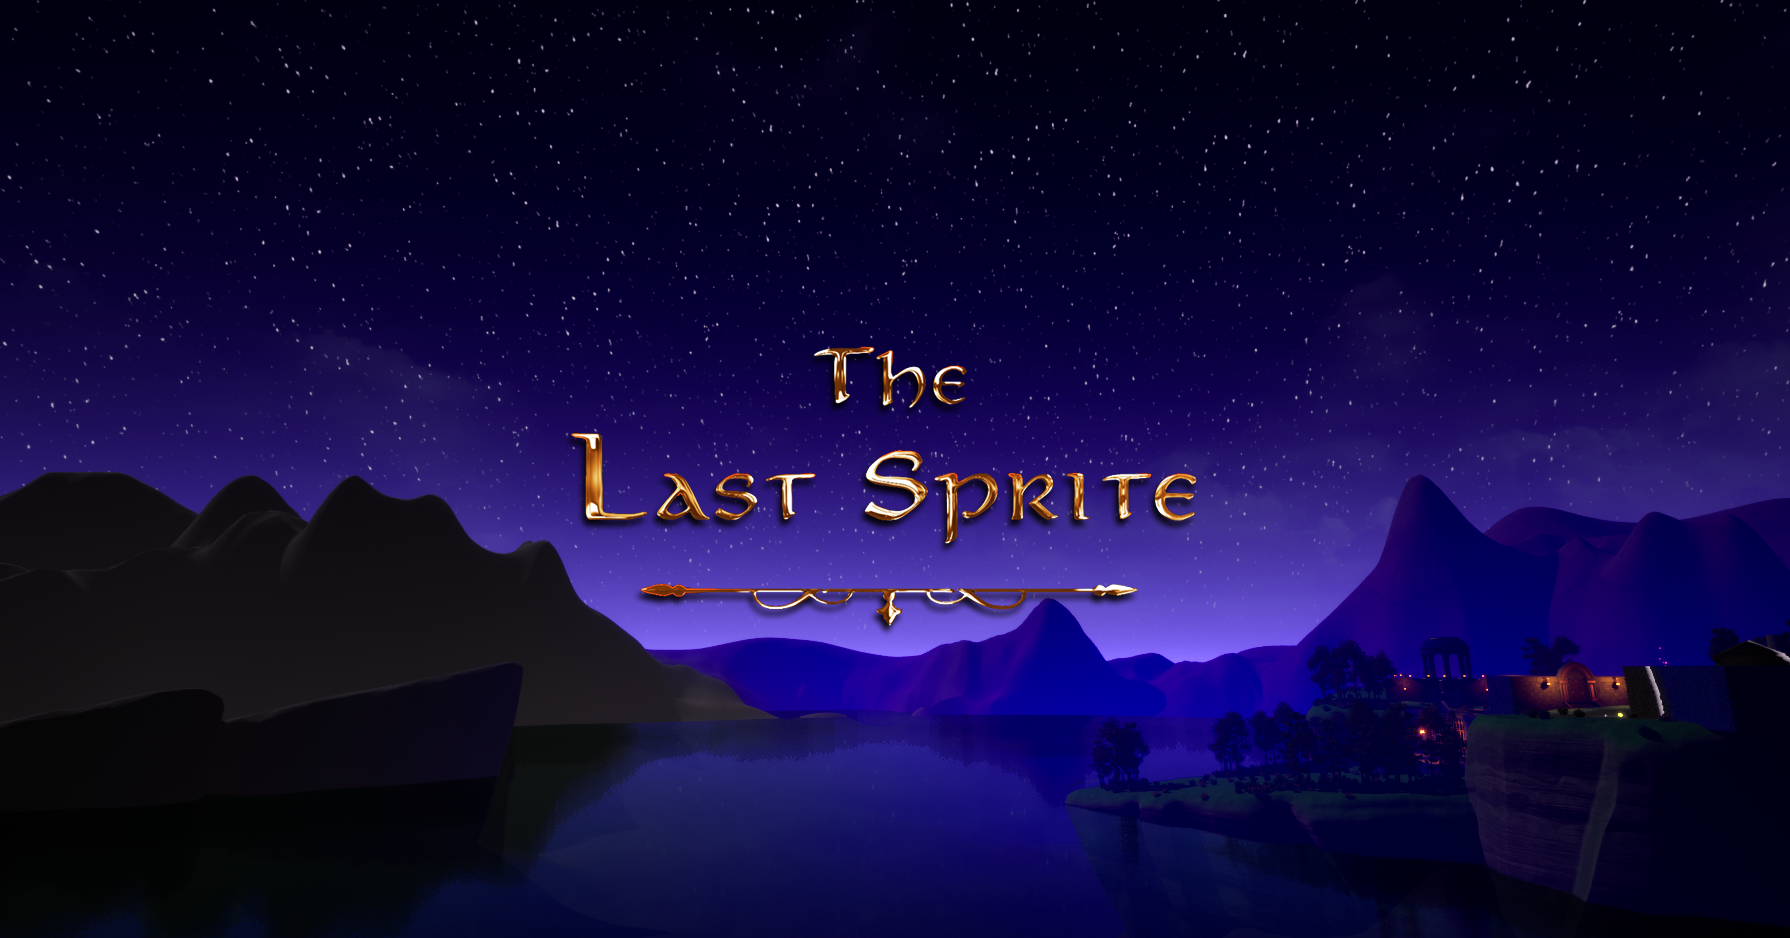 The Last Sprite